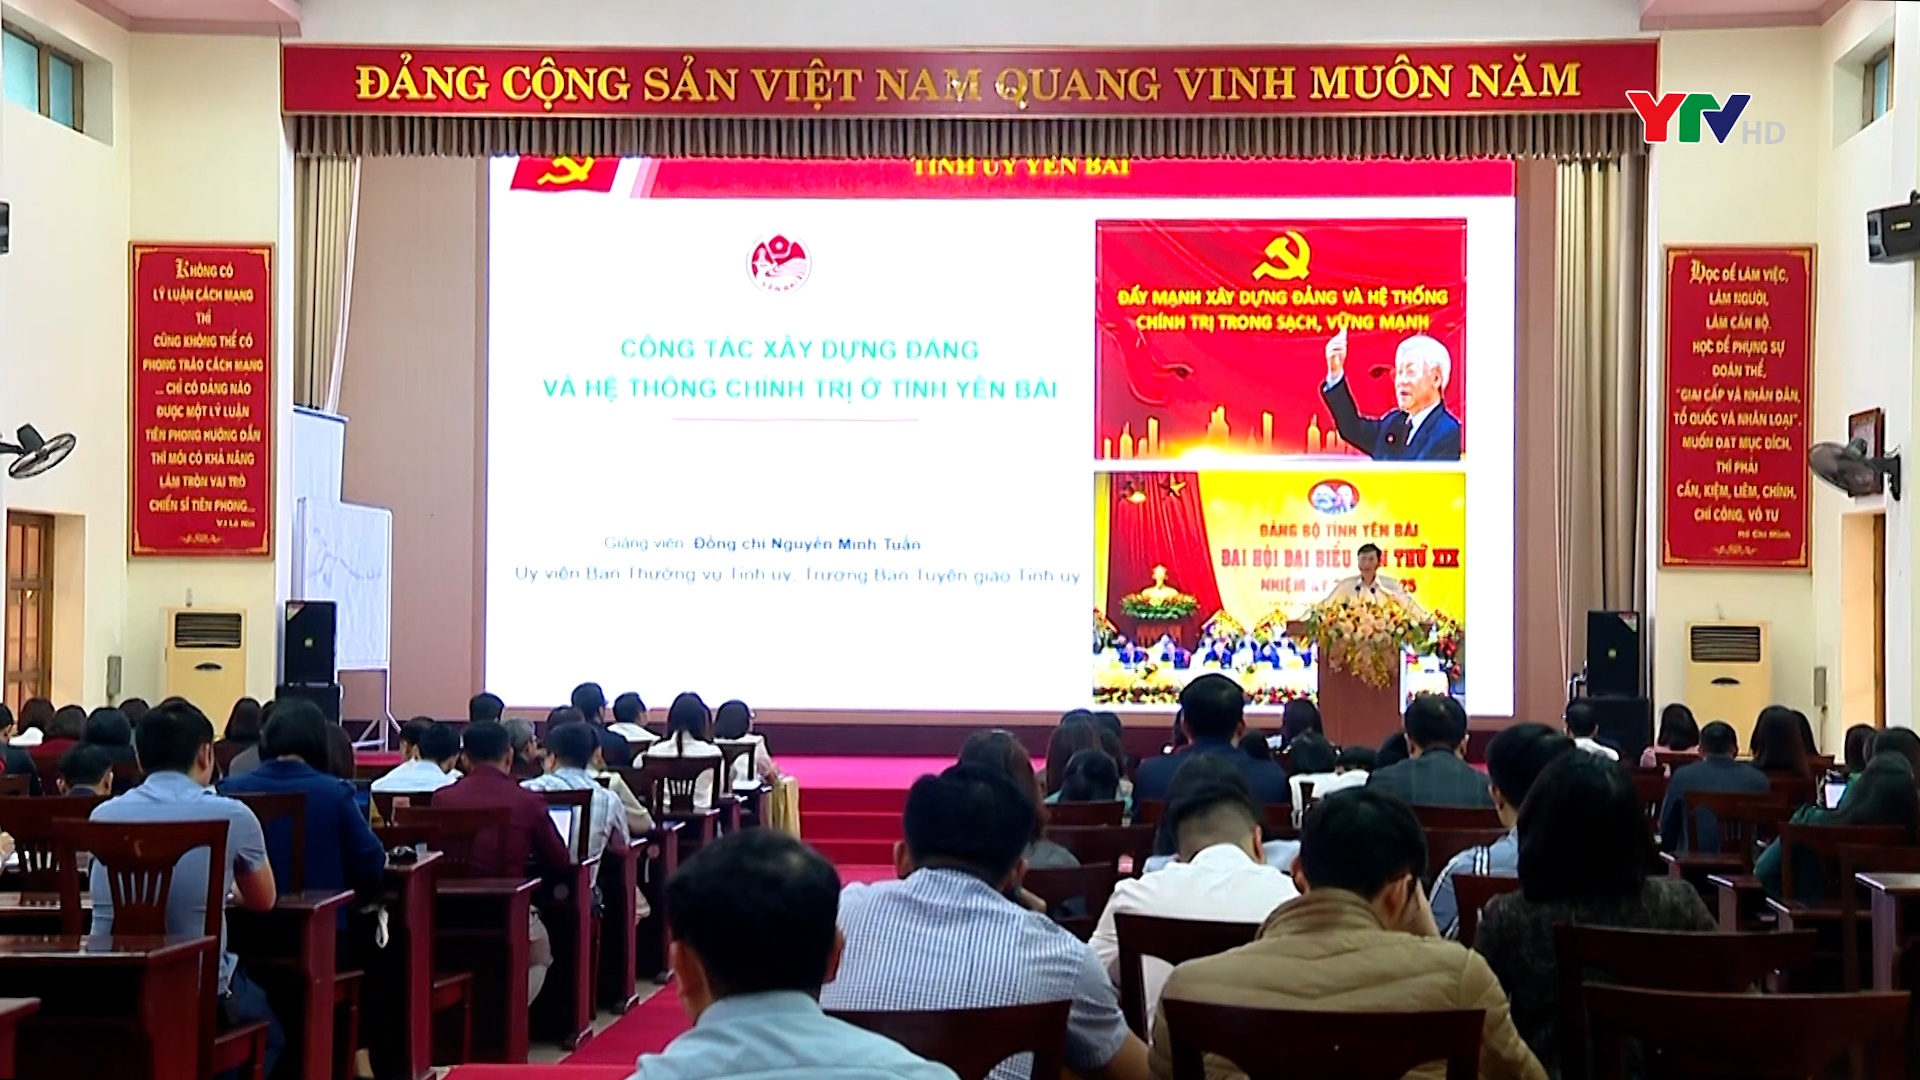 Đồng chí Trưởng Ban Tuyên giáo Tỉnh ủy Nguyễn Minh Tuấn giảng dạy chuyên đề về công tác xây dựng Đảng và hệ thống chính trị ở tỉnh Yên Bái cho cán bộ tham gia Đề án 11